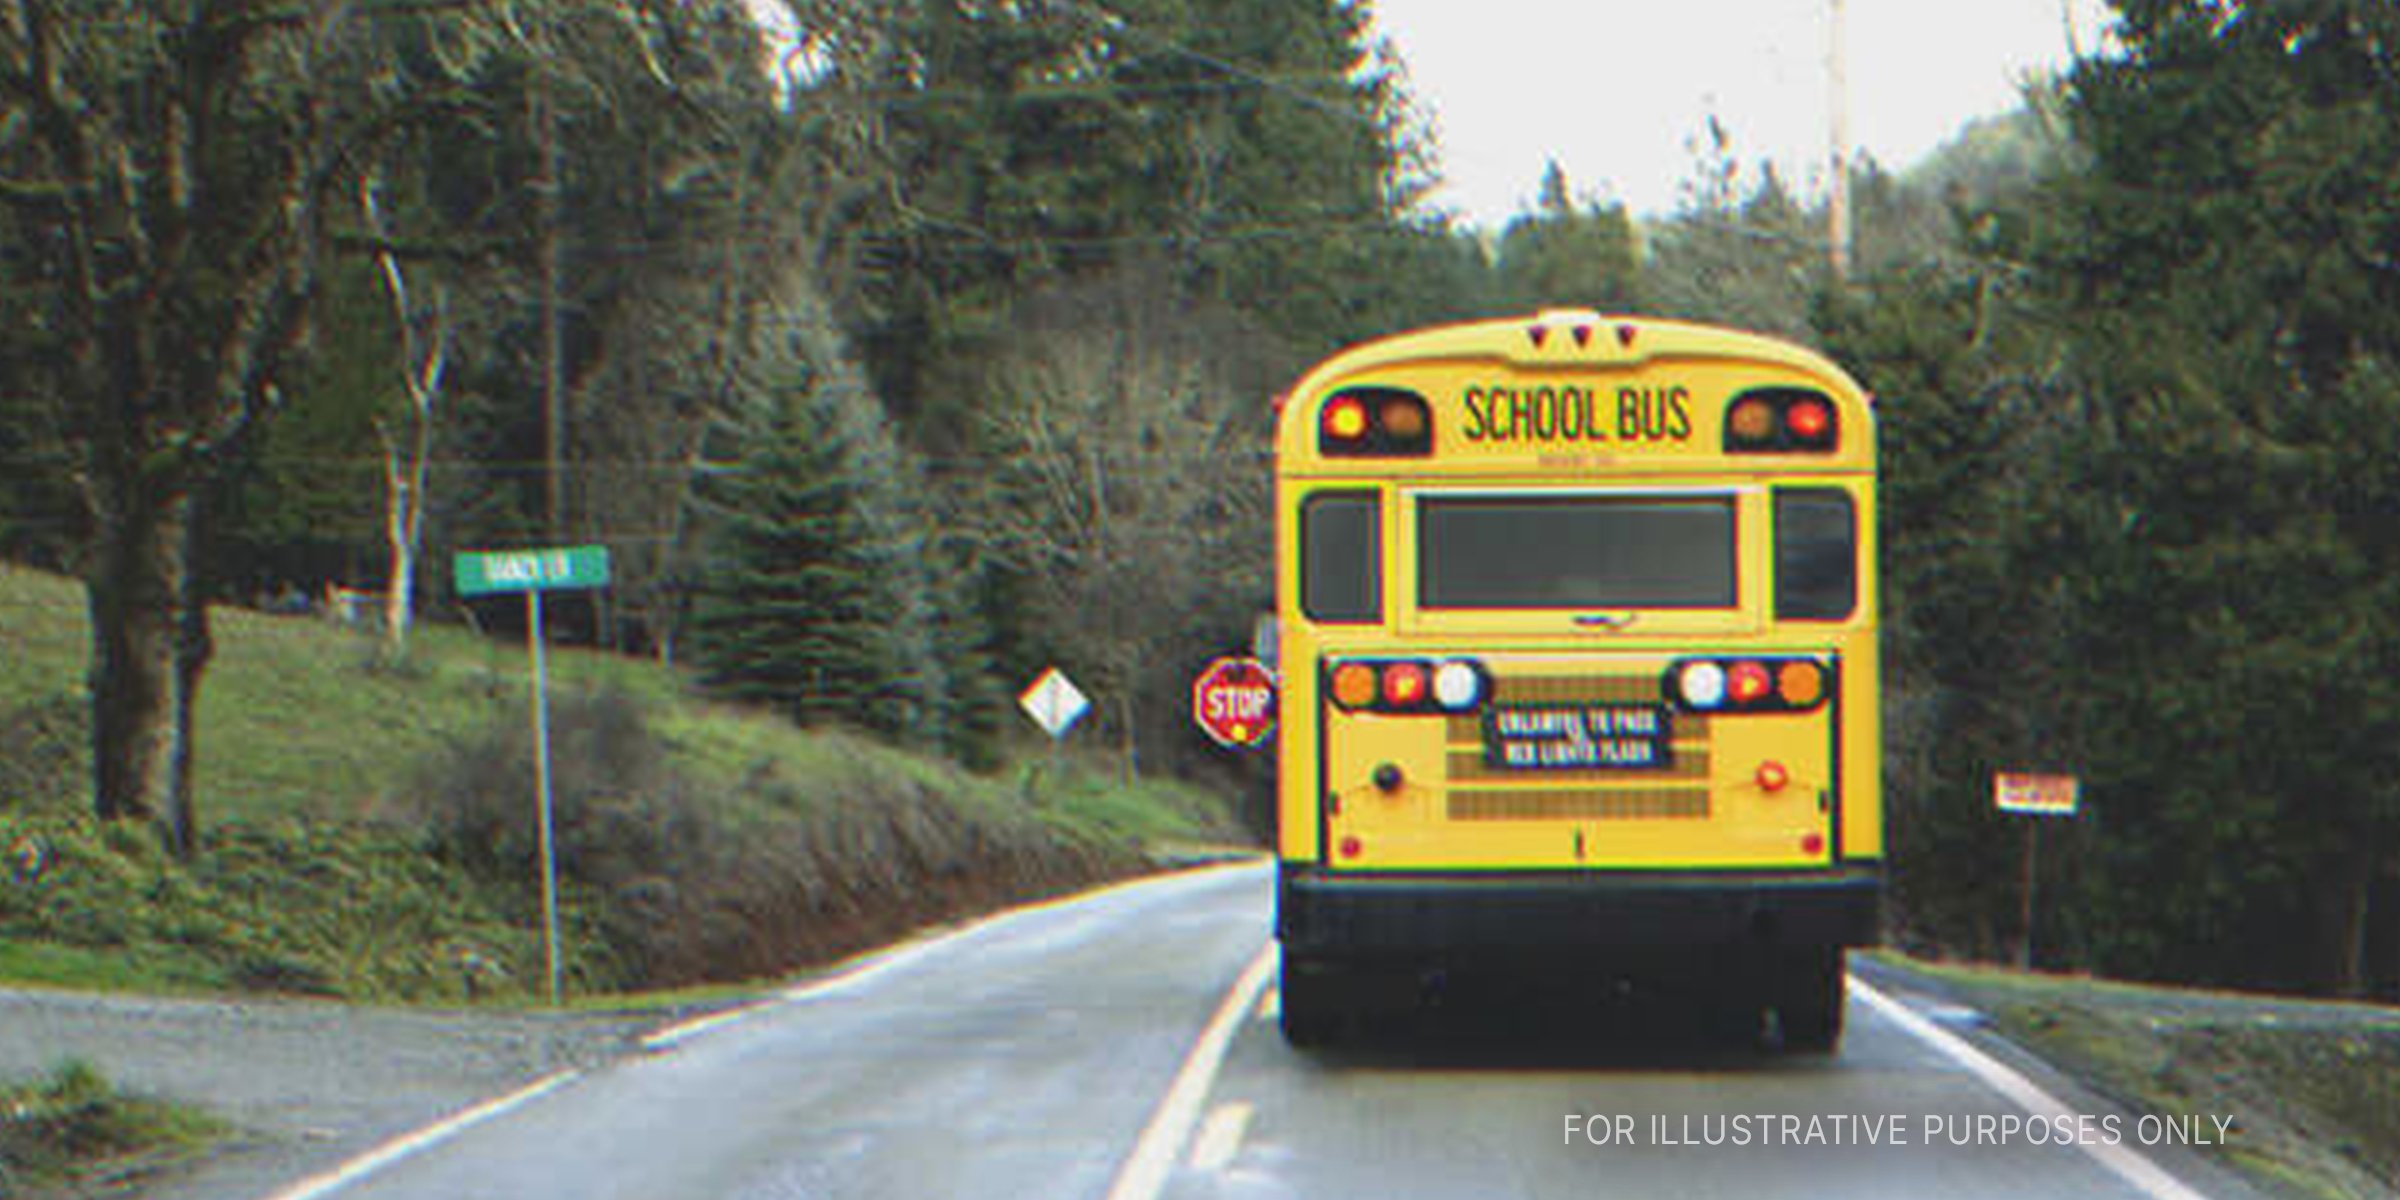 School bus. | Source: Shutterstock